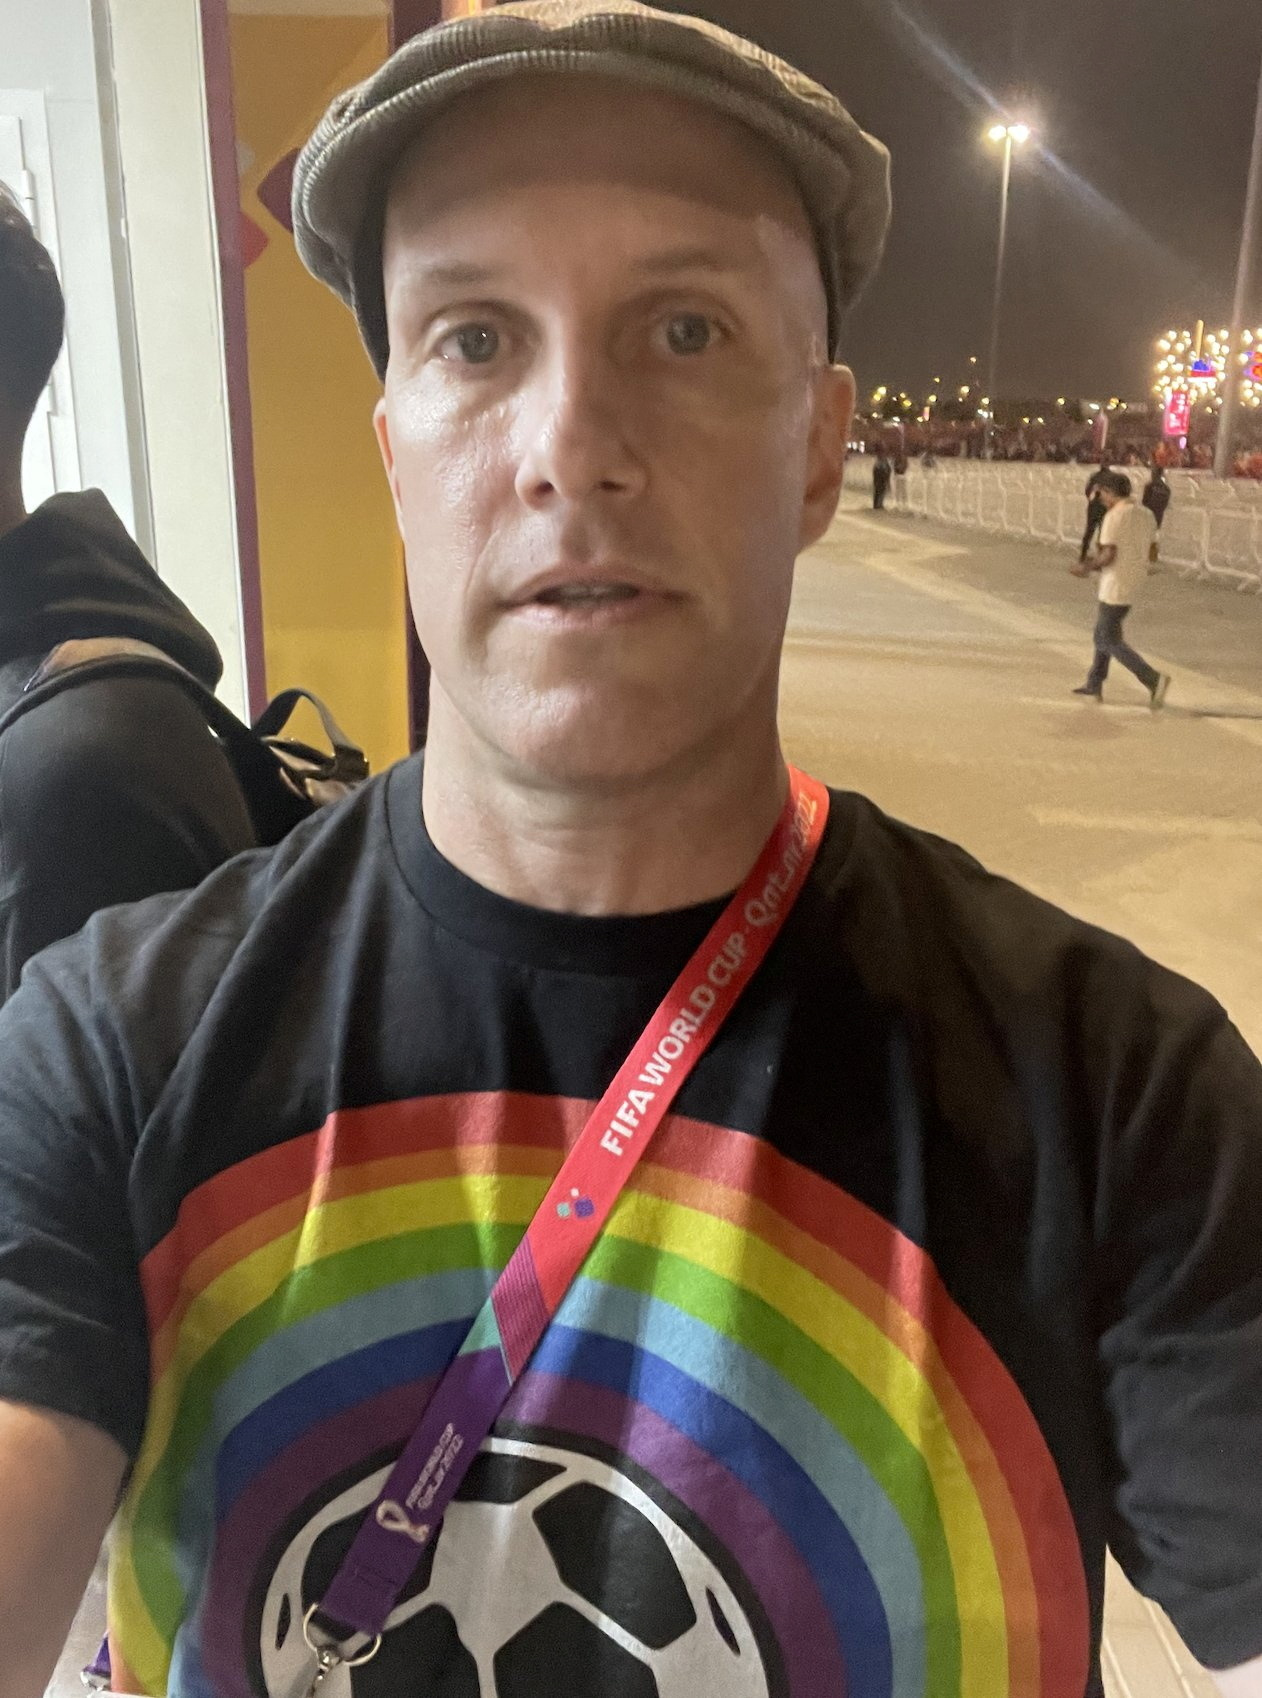 Μουντιάλ 2022: Πέθανε ξαφνικά την ώρα της μετάδοσης ο δημοσιογράφος που είχε φορέσει μπλουζάκι της ΛΟΑΤΚΙ κοινότητας